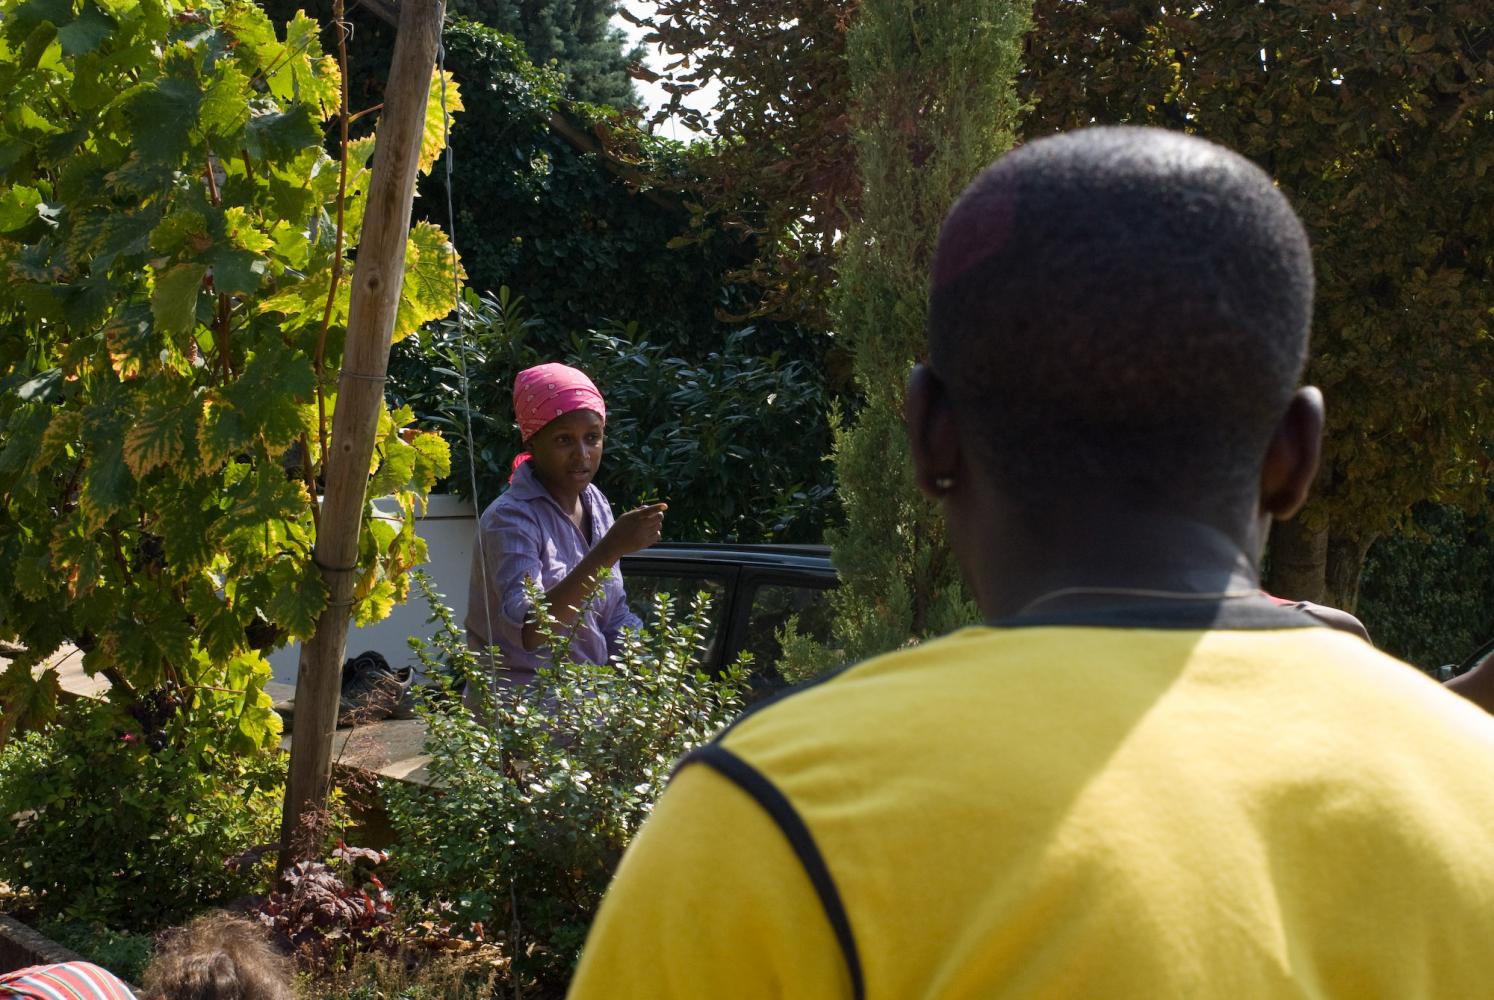 Devant la maison des Pillot à la pause déjeuner : Sheila, un foulard rose sur la tête, en pleine argumentation avec Brice, de dos, en t-shirt jaune. Chassagne-Montrachet, Bourgogne, septembre 2009.